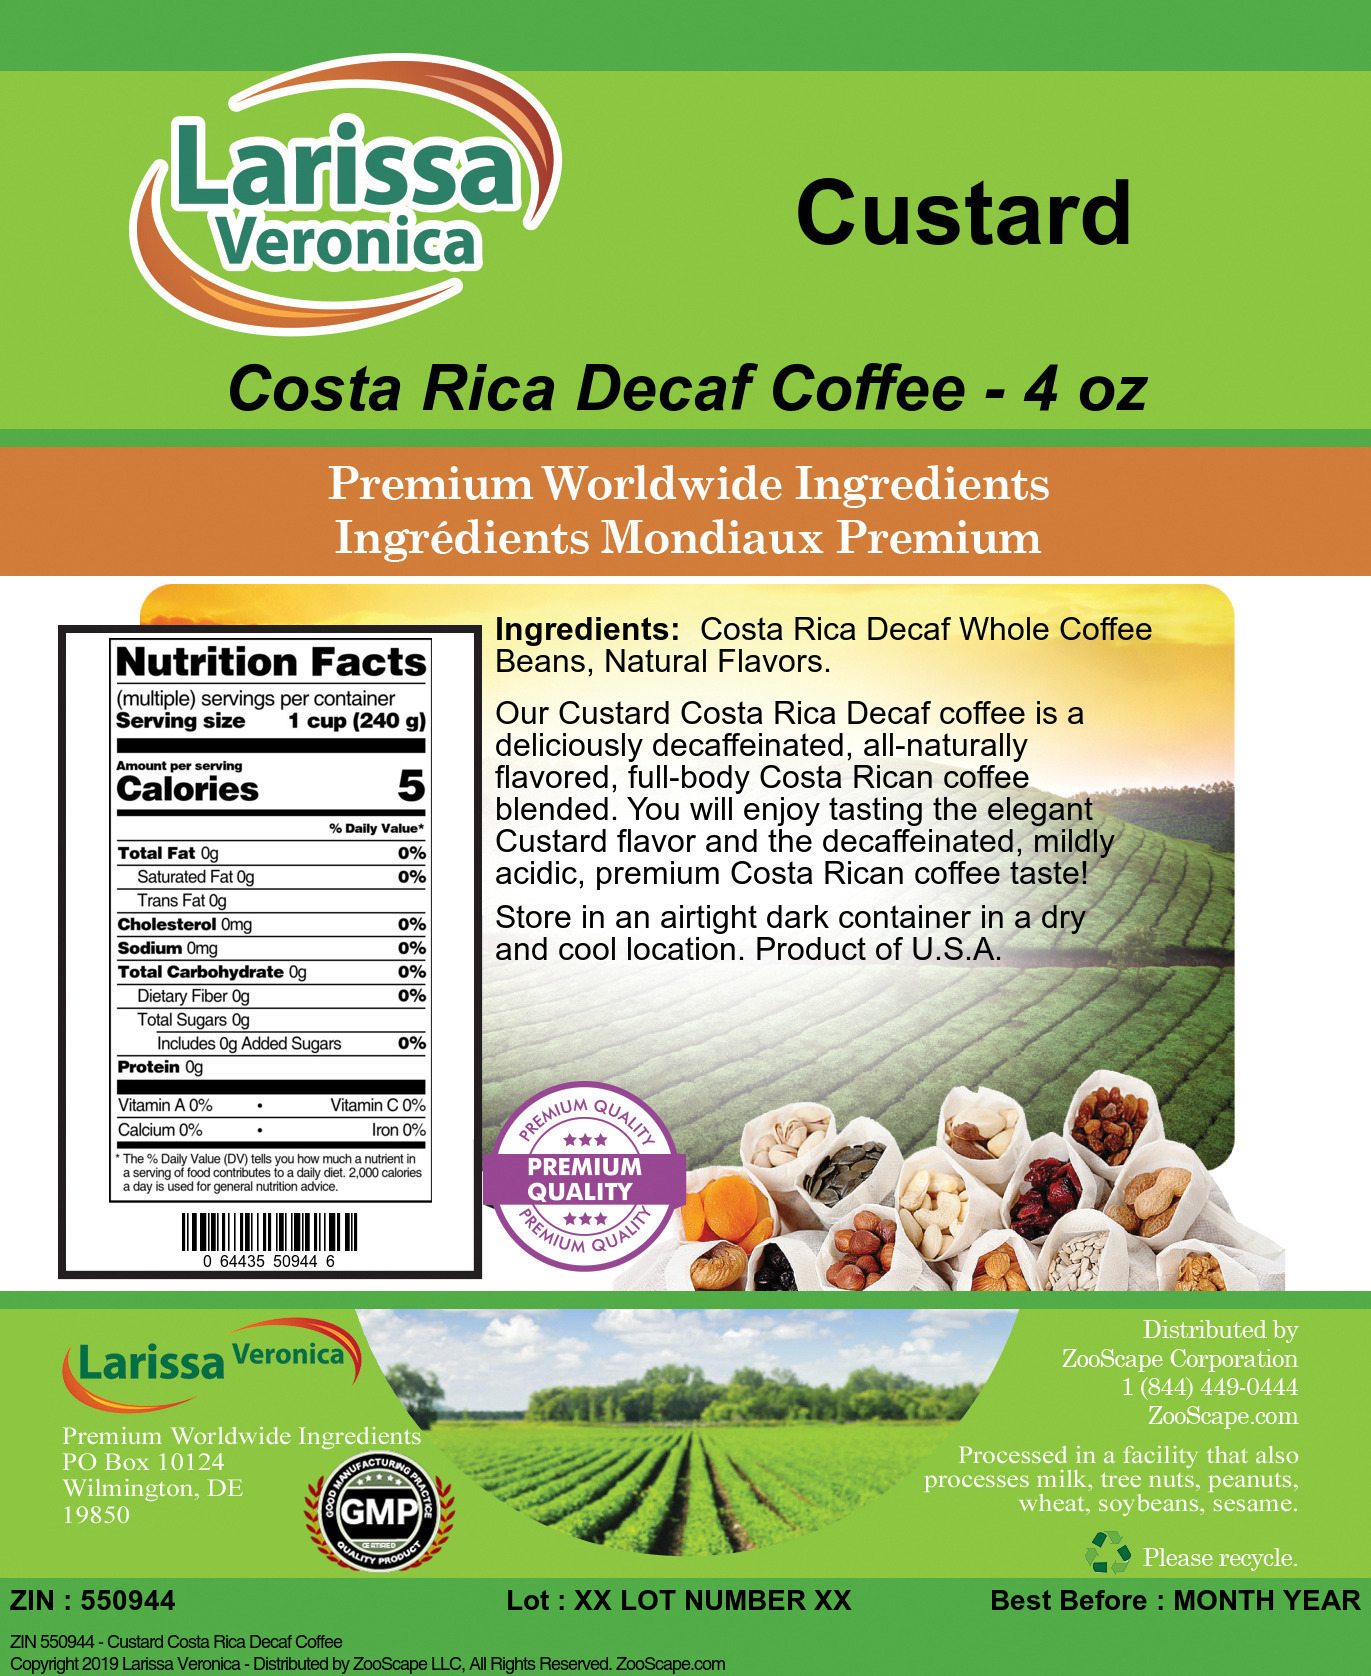 Custard Costa Rica Decaf Coffee - Label